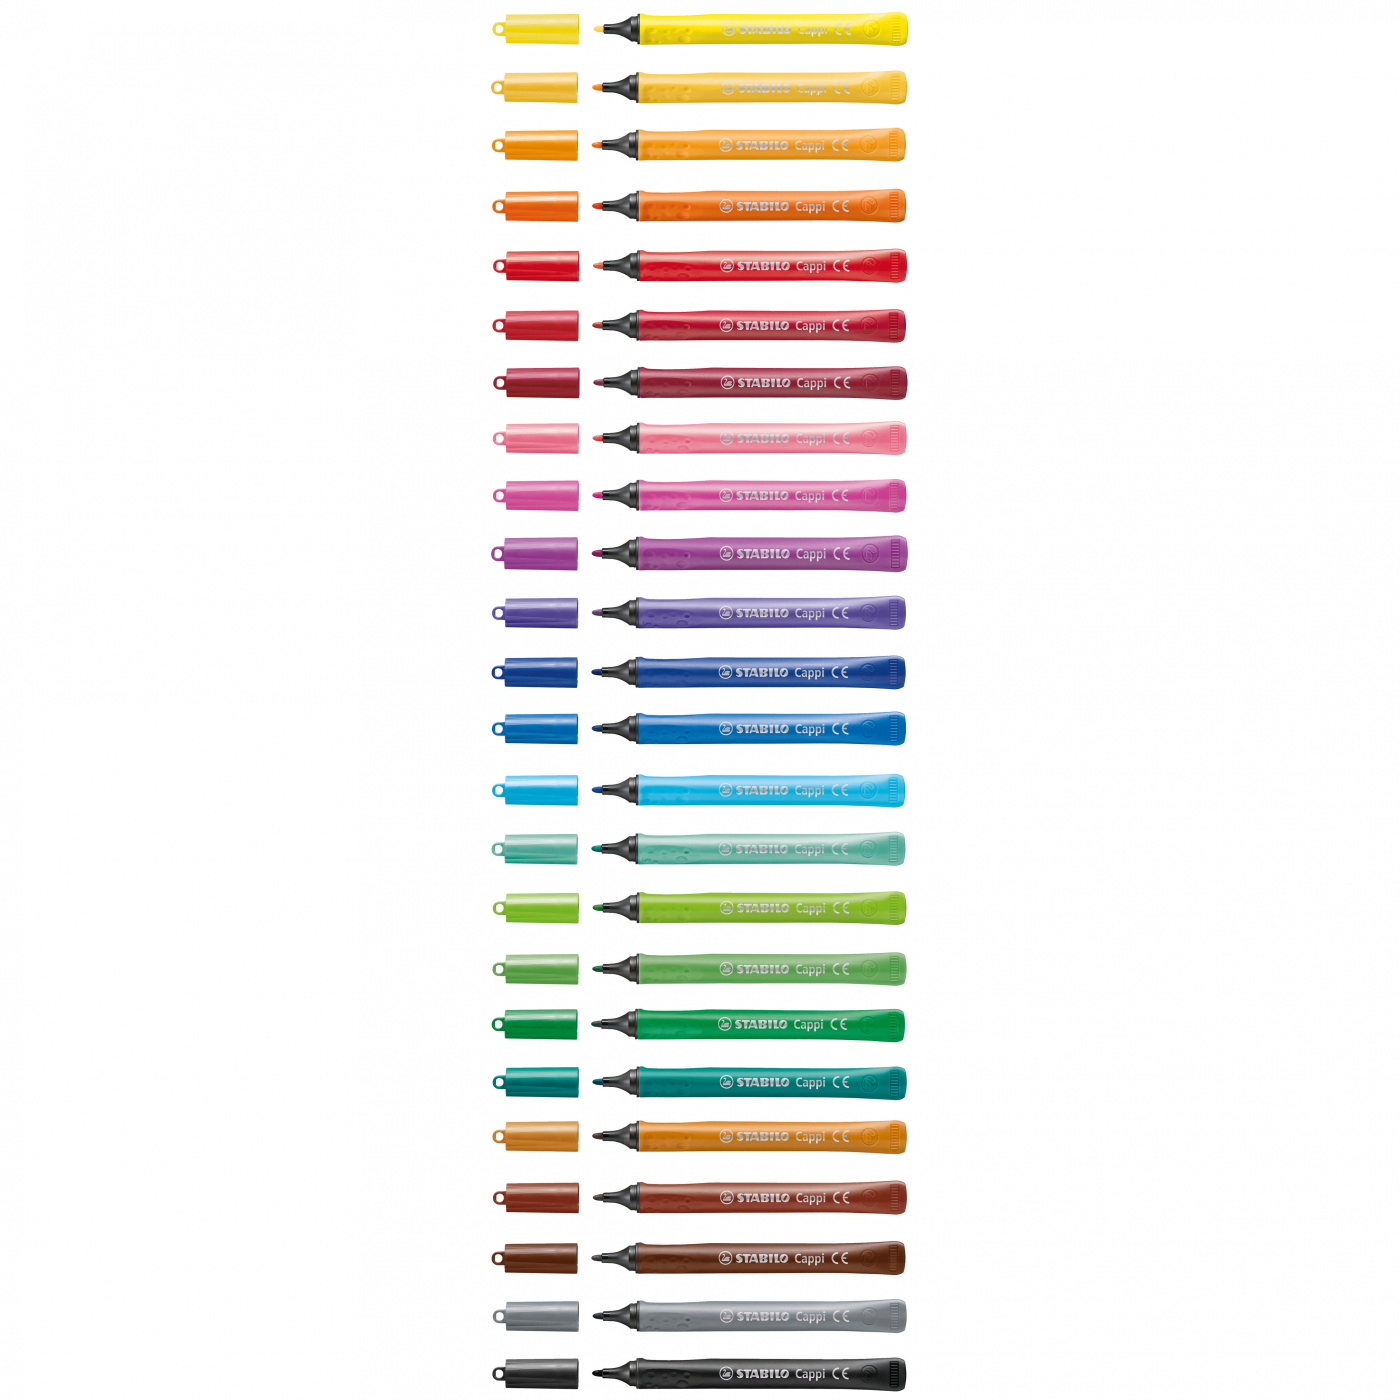 Cappi 24-pack in the group Kids / Kids' Pens / Felt Tip Pens for Kids at Pen Store (125415)